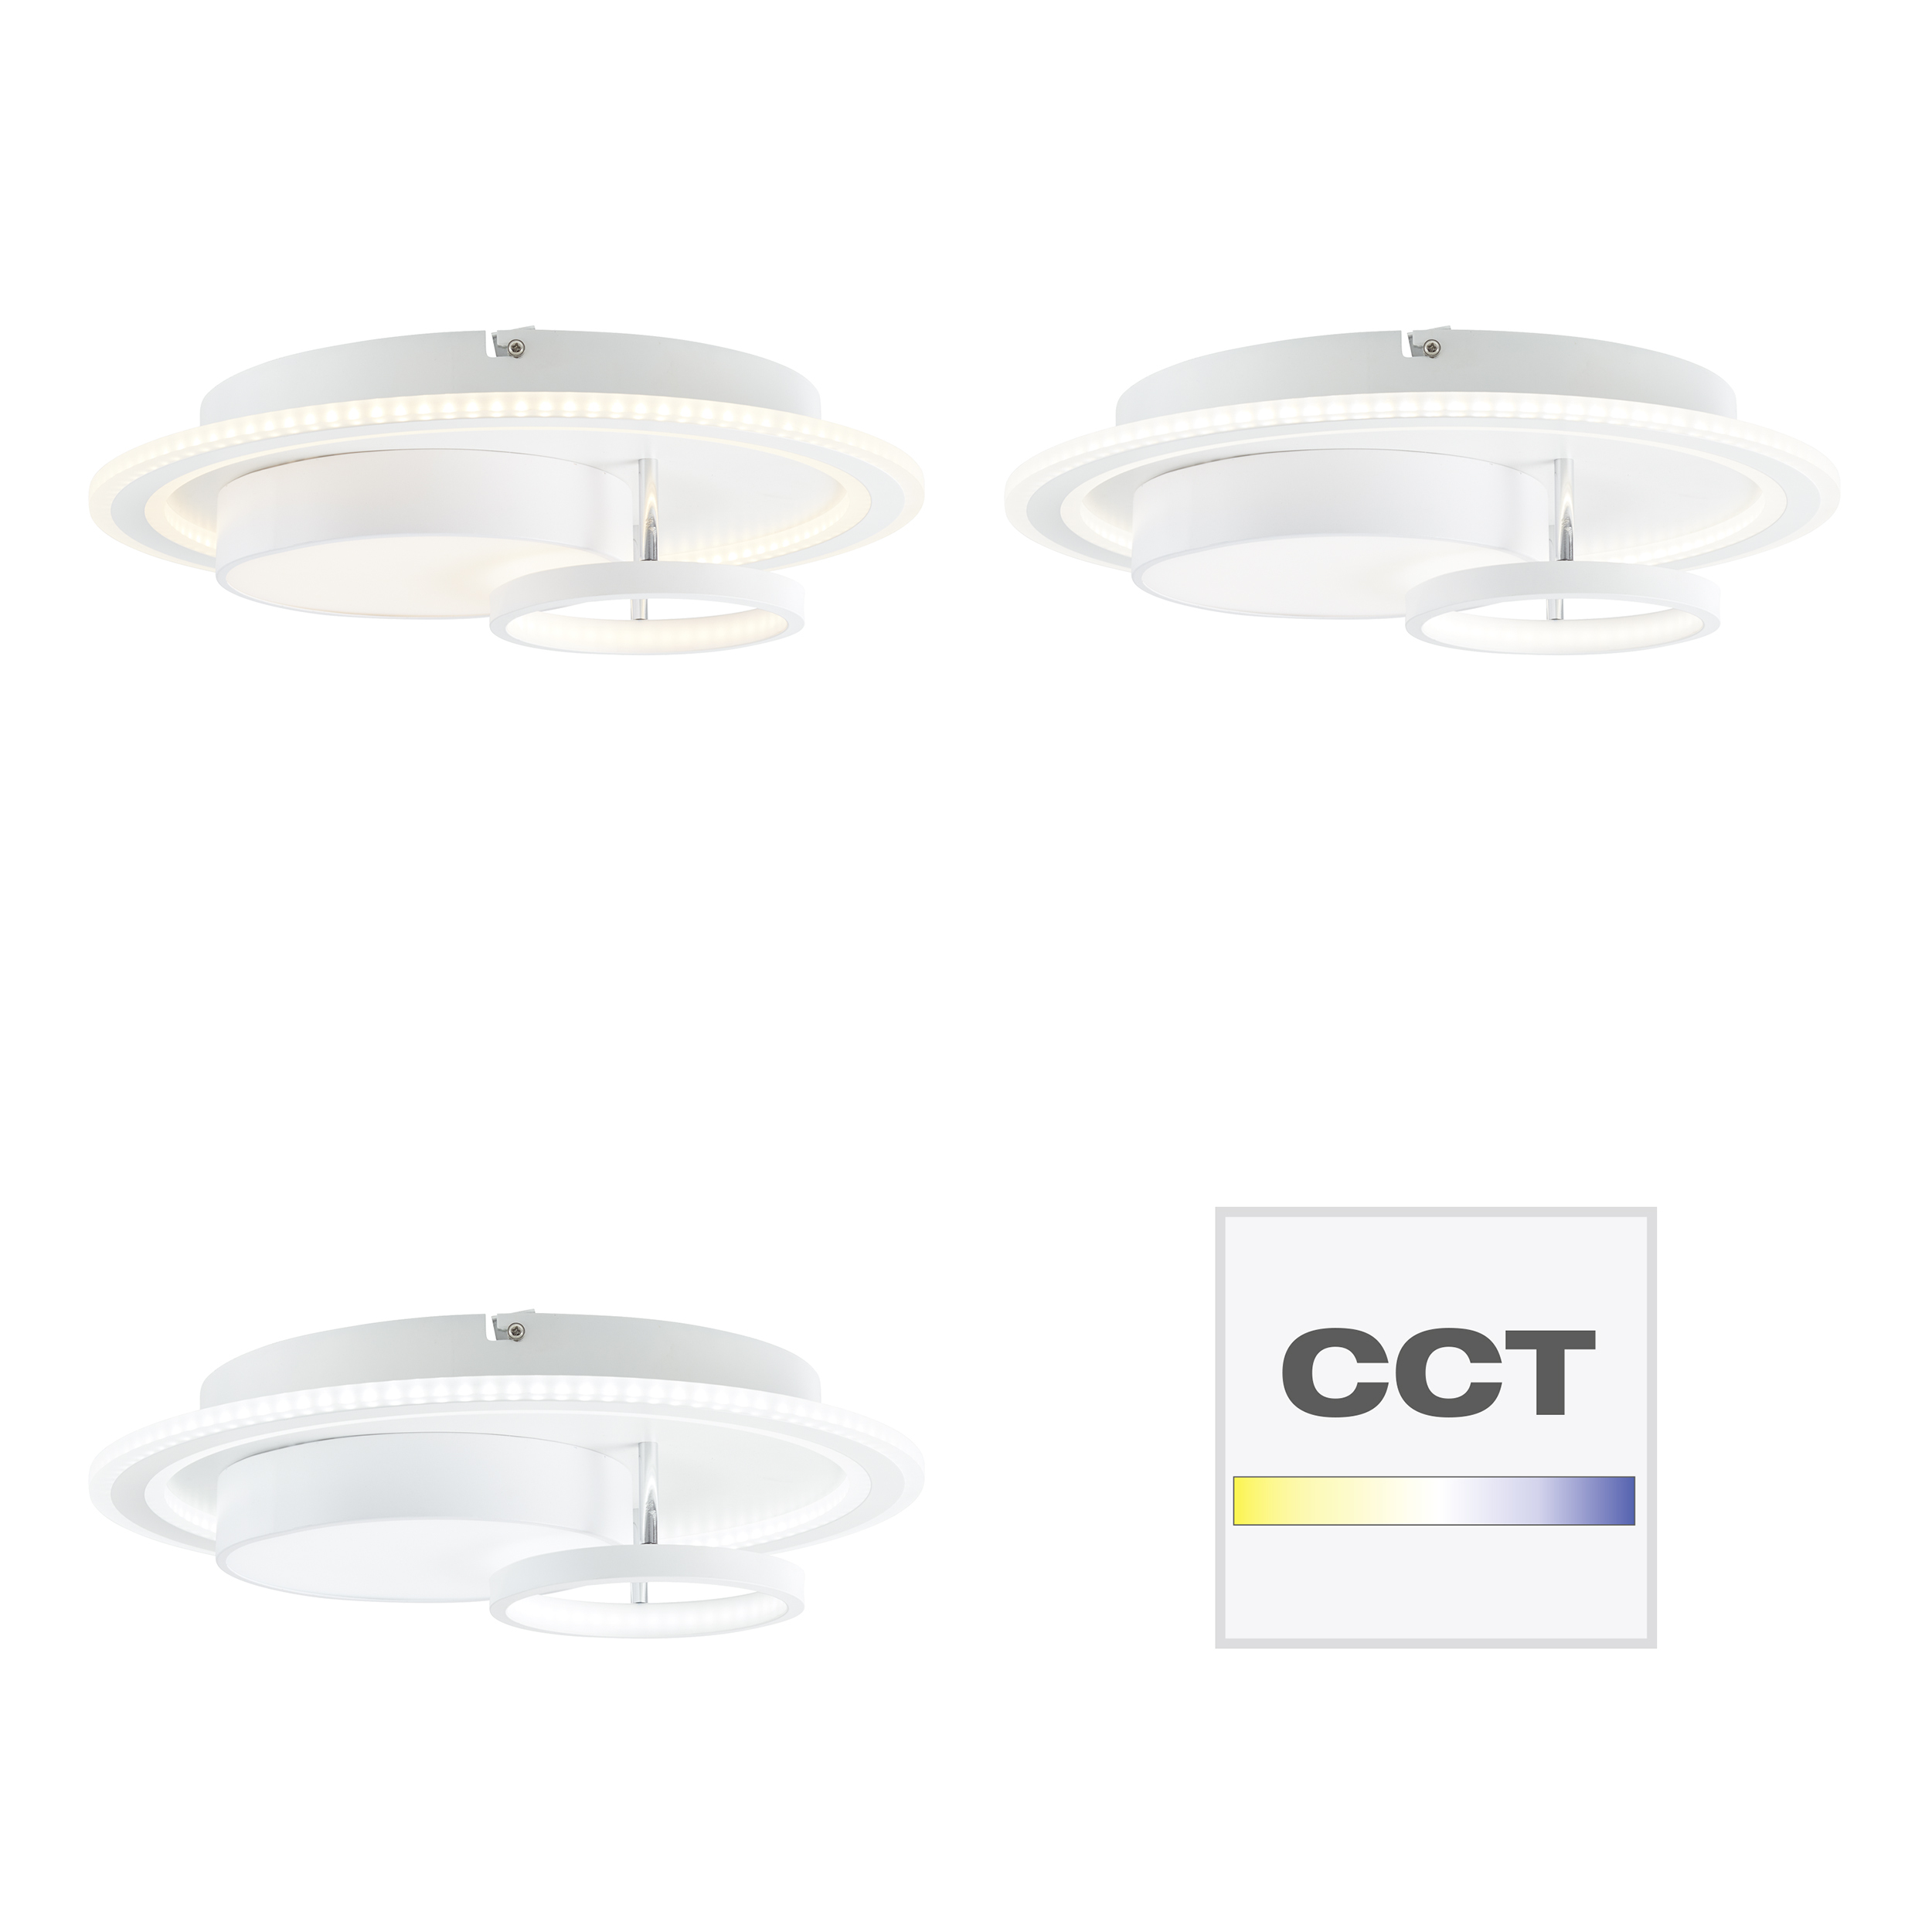 Sigune LED Ceiling white/black 40x40cm | Light G99385/75